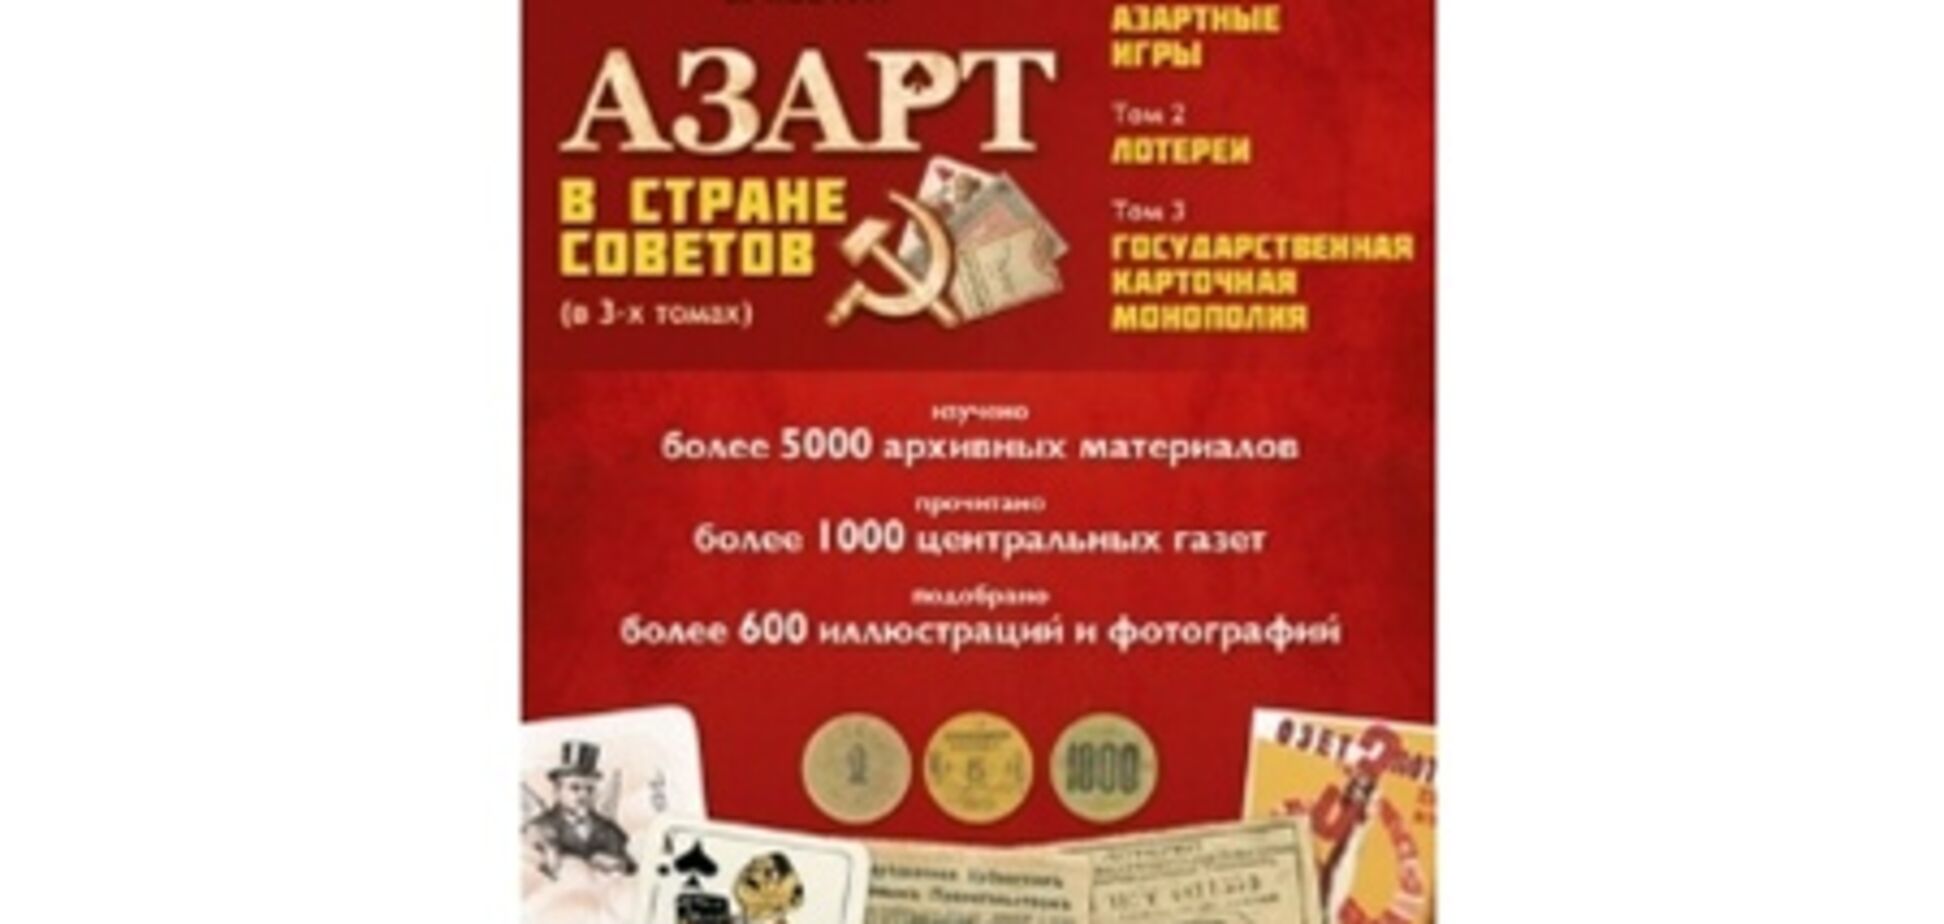 'Азарт в Стране Советов' - все об истории азартных игр и лотерей в СССР